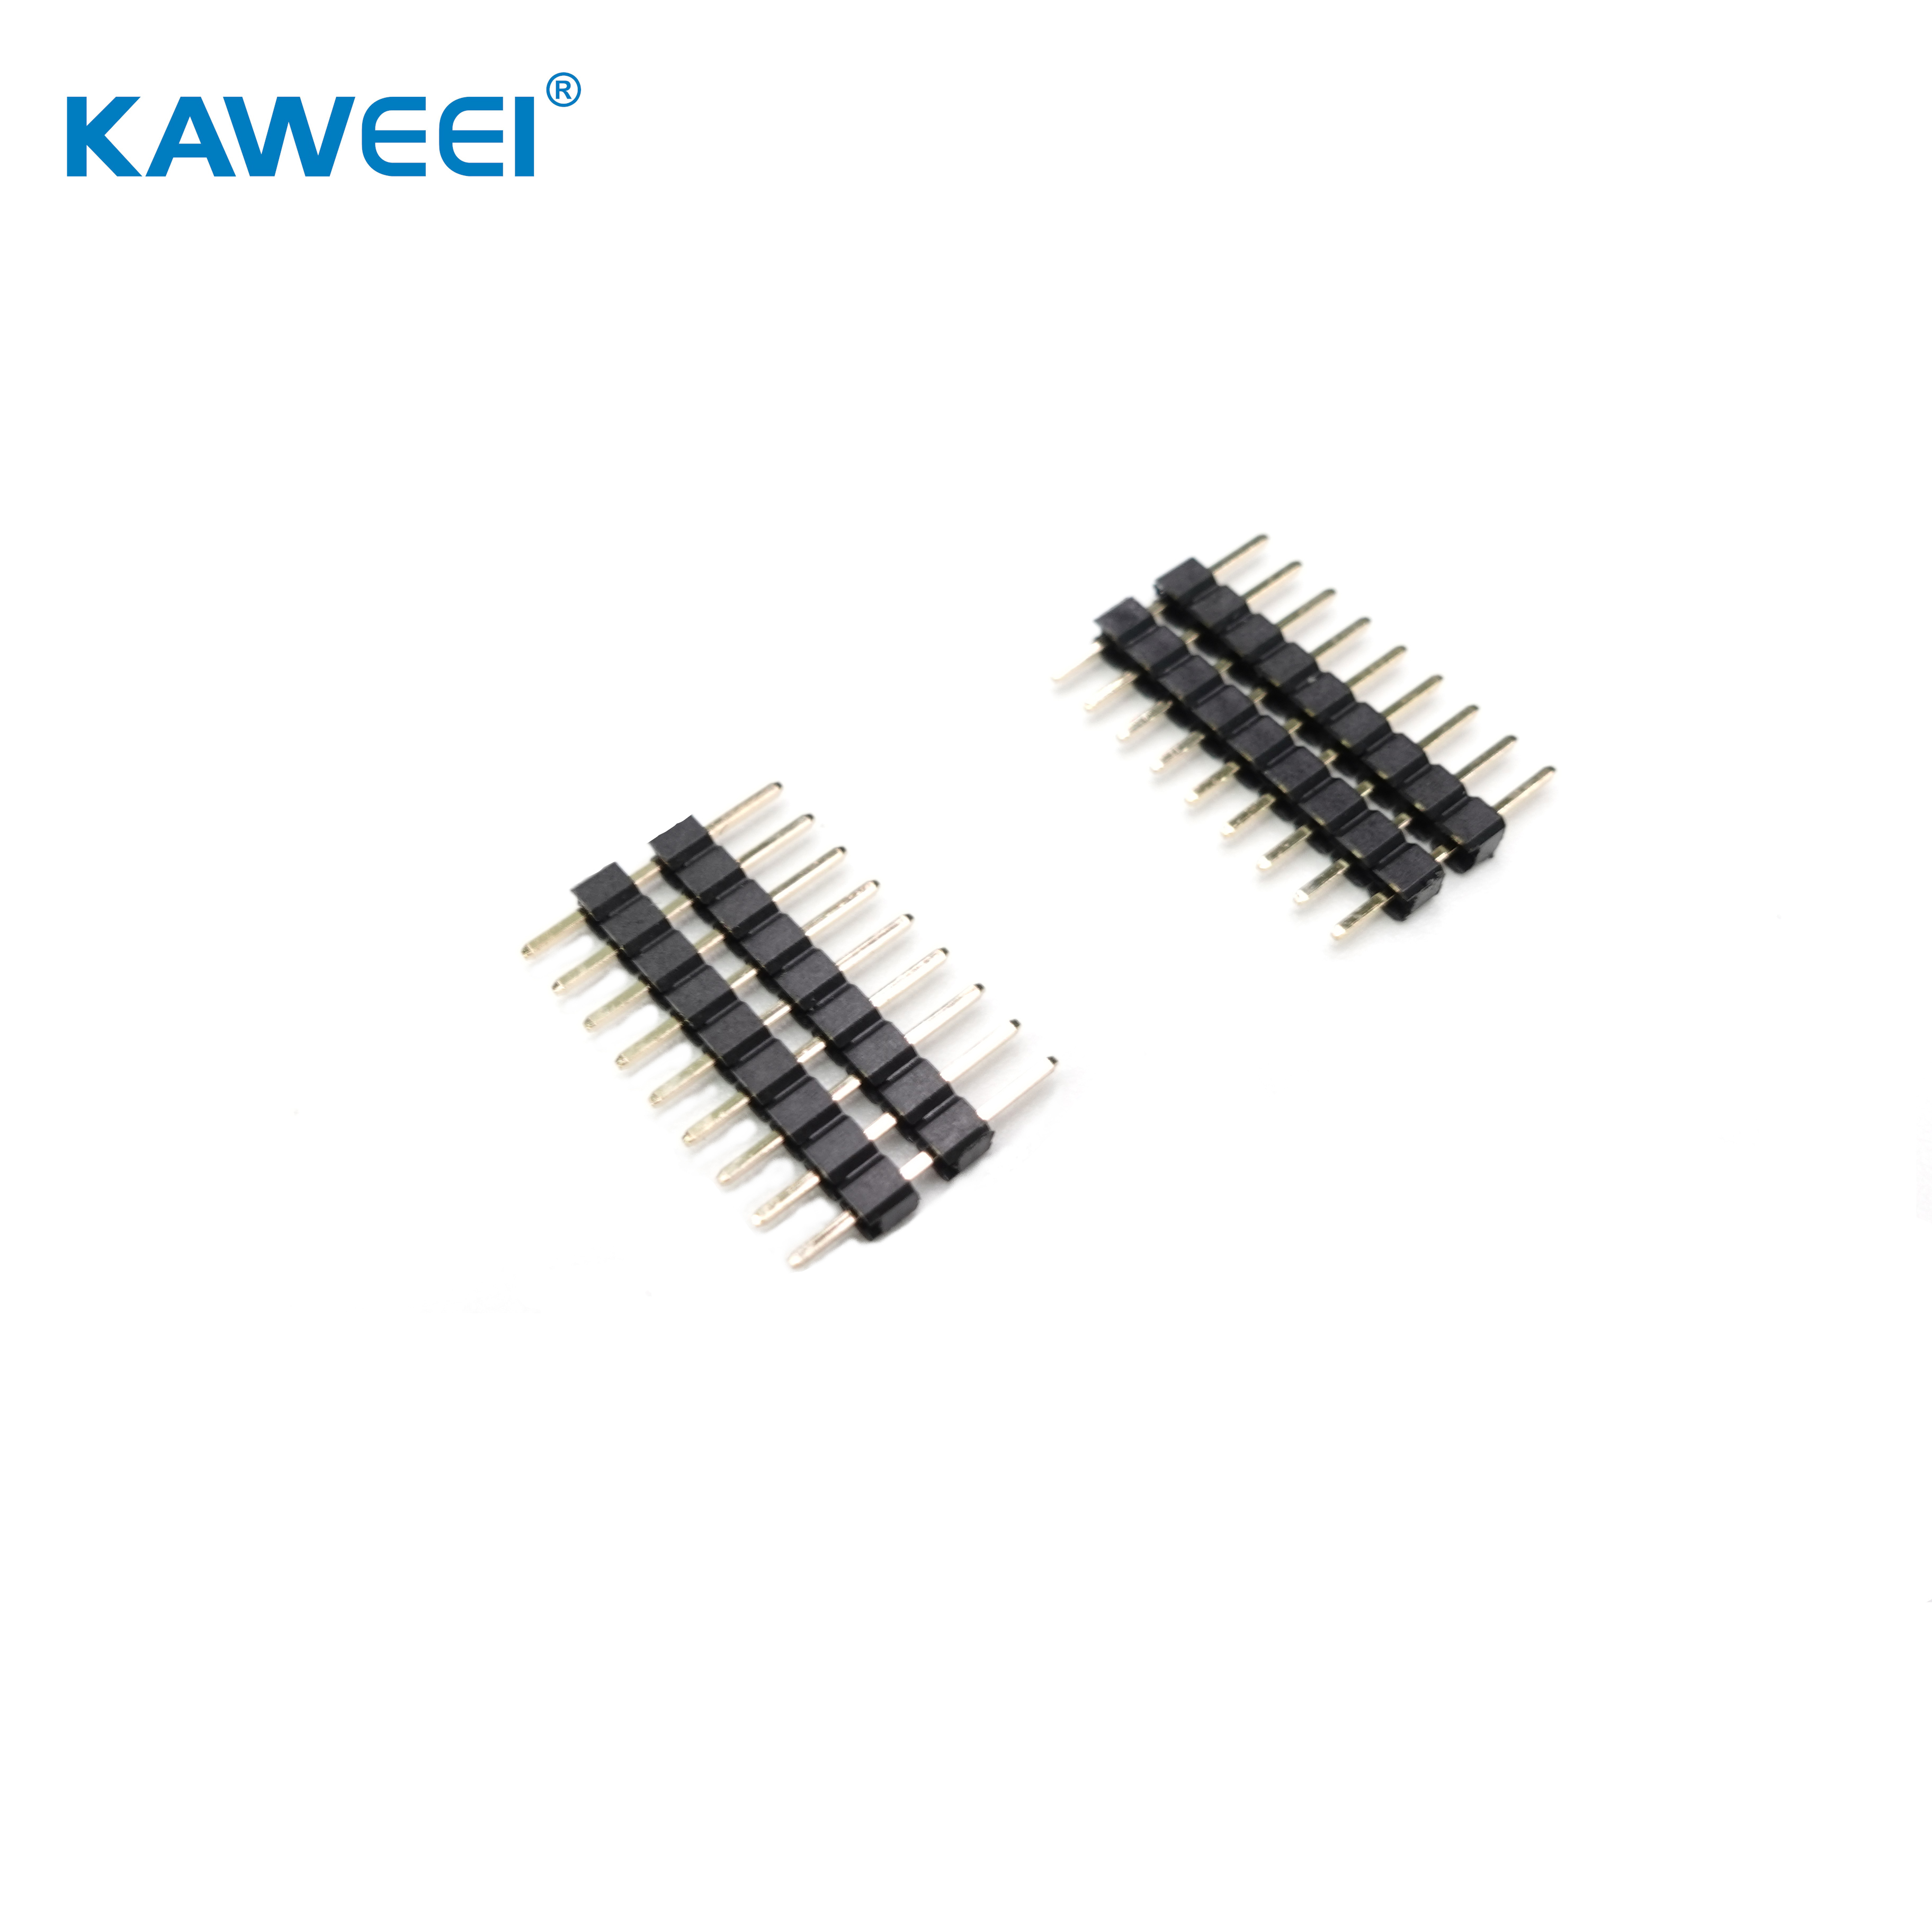 2,54 mm pitch pin header rak typ kort-till-kort-kontakt PCB-kontakt